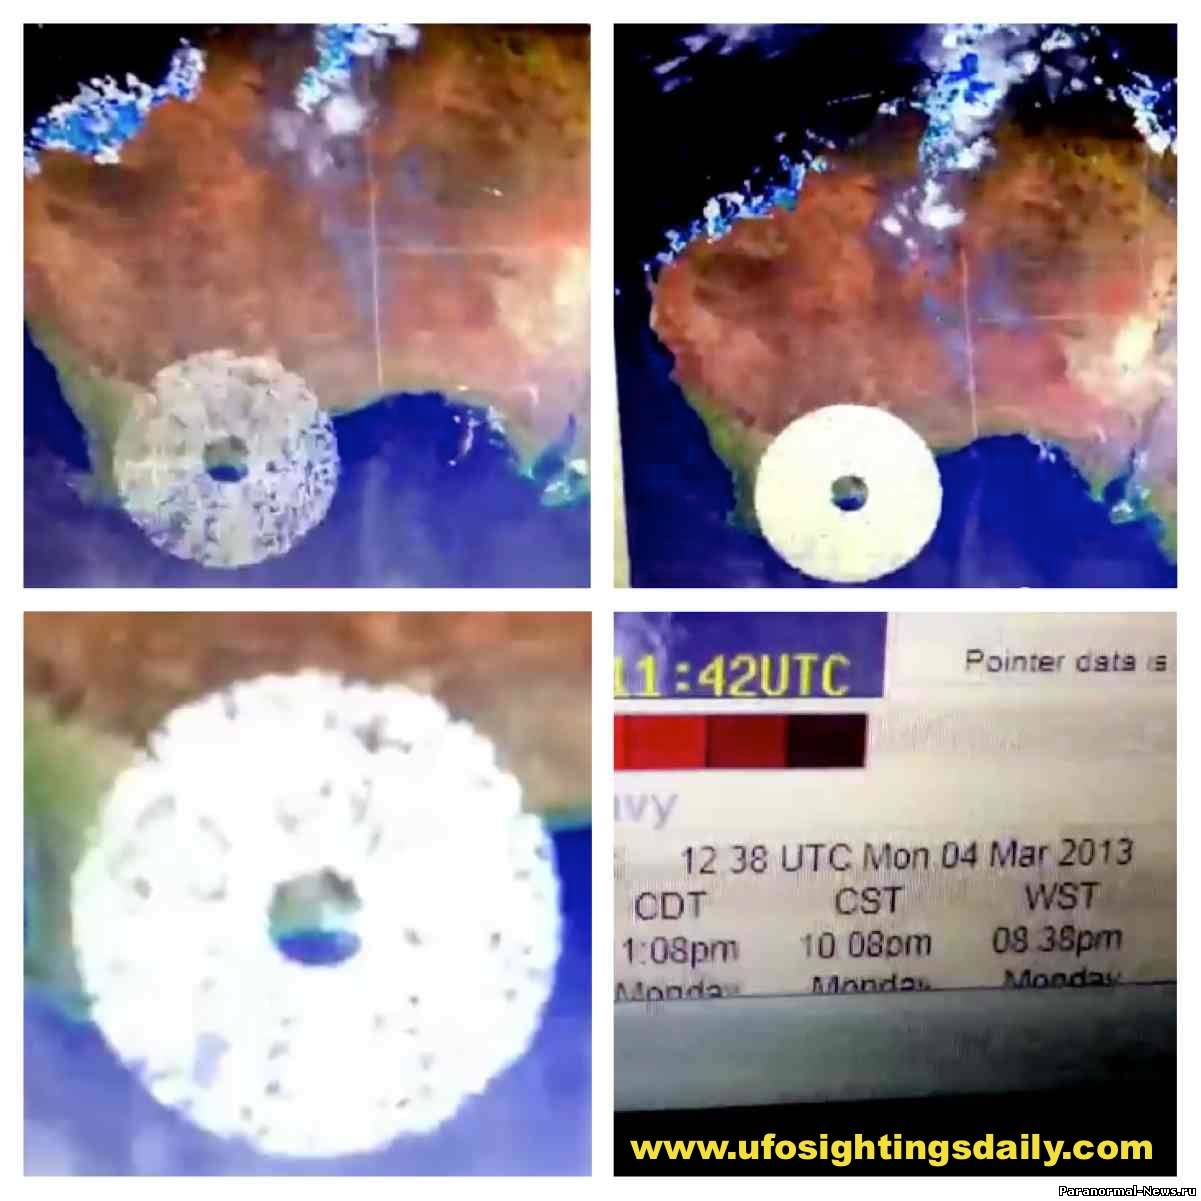 Метеорадар зафиксировал нечто огромное над Австралией